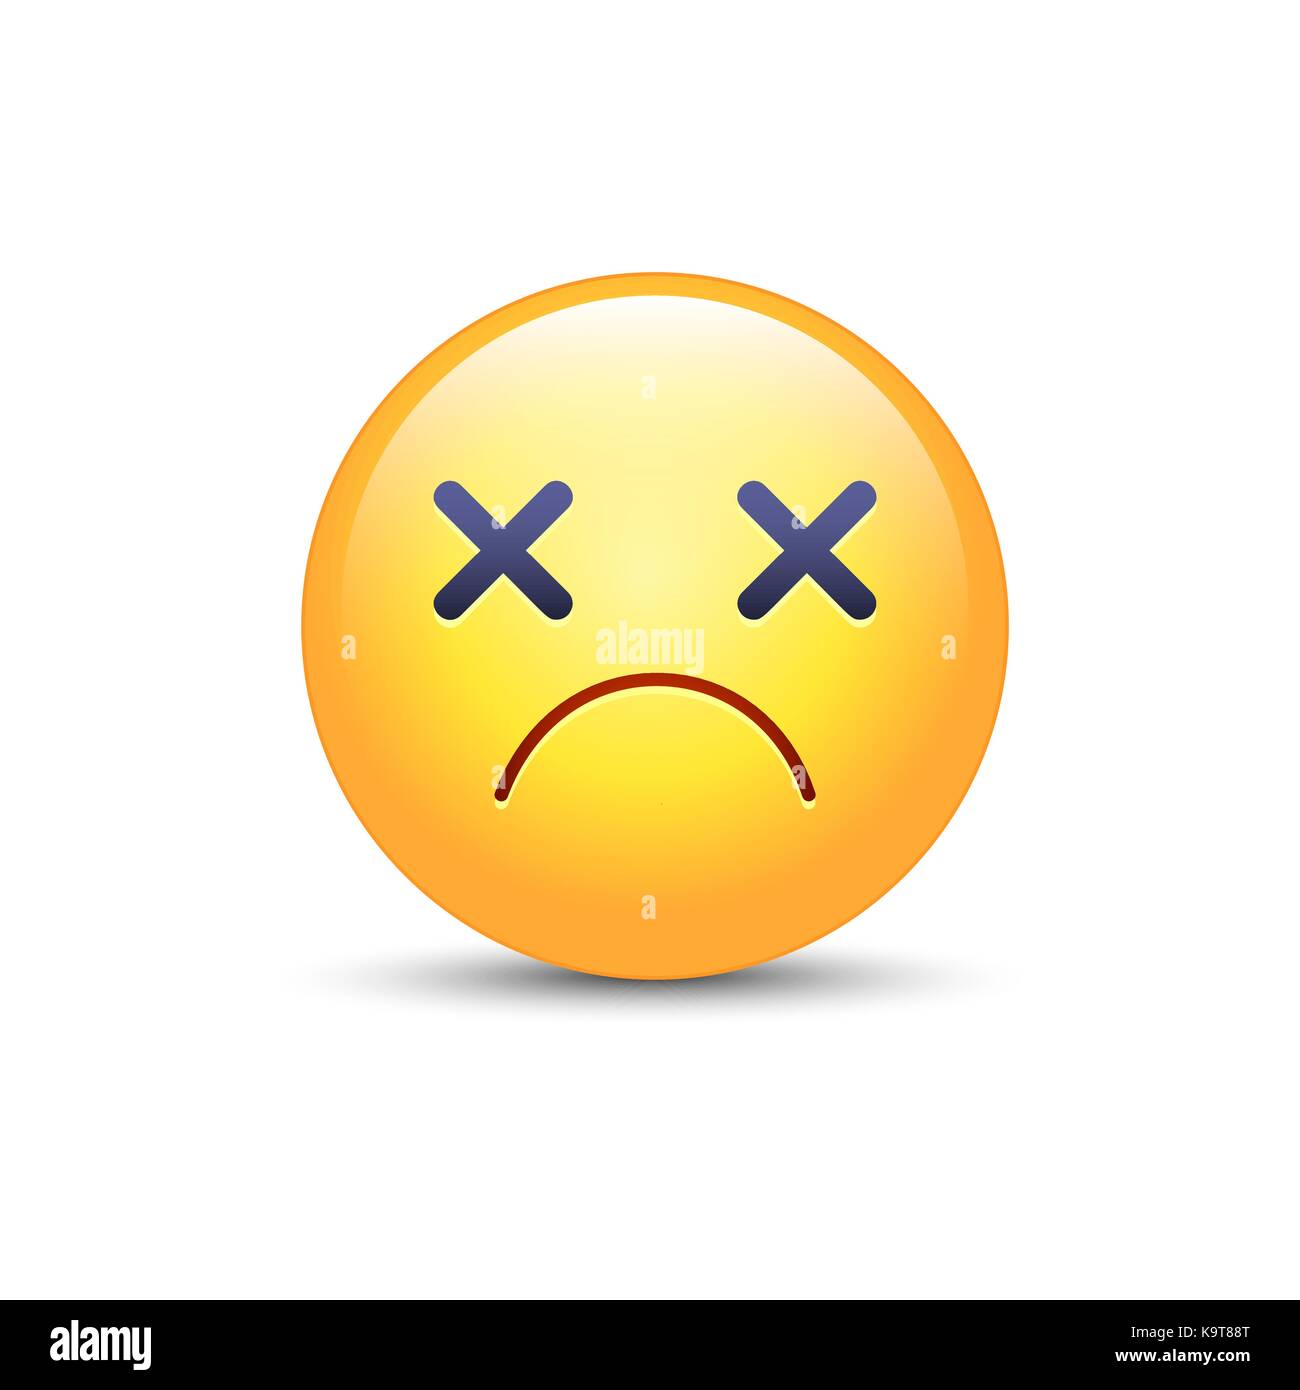 Dizzy gli Emoji faccia. cross eyes emoticon icona vettore. triste cartoon  smiley Immagine e Vettoriale - Alamy